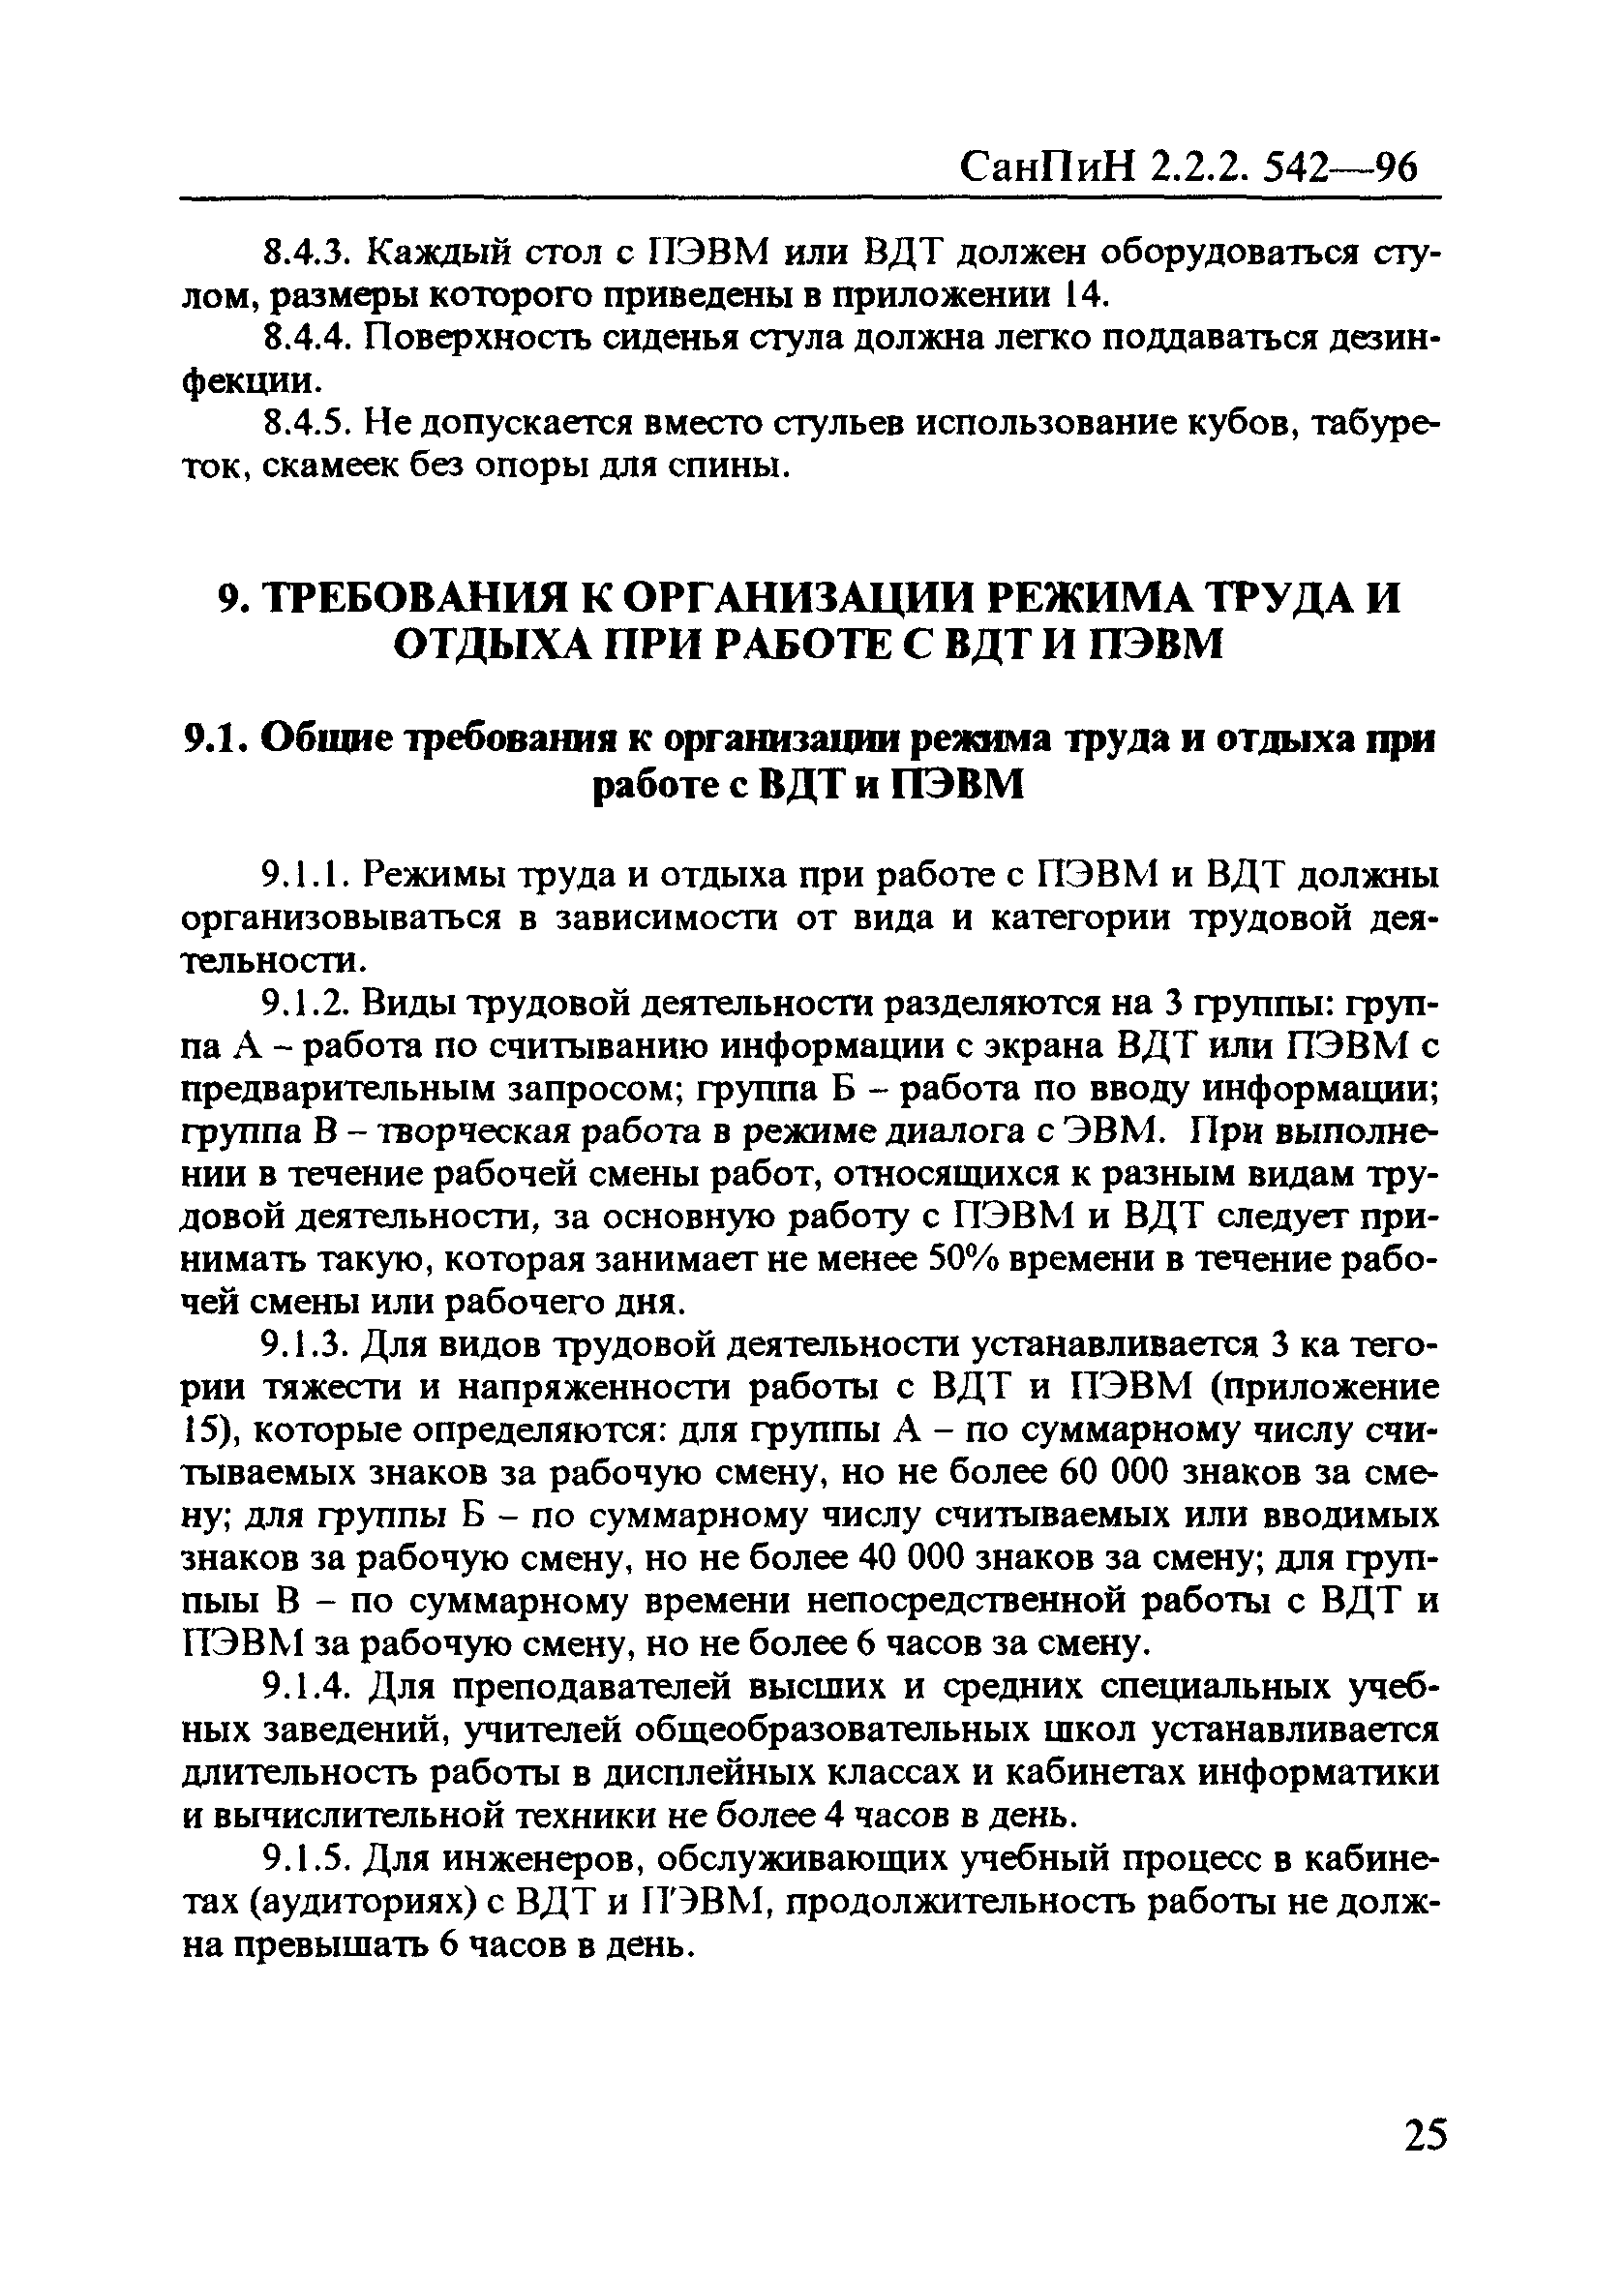 СанПиН 2.2.2.542-96